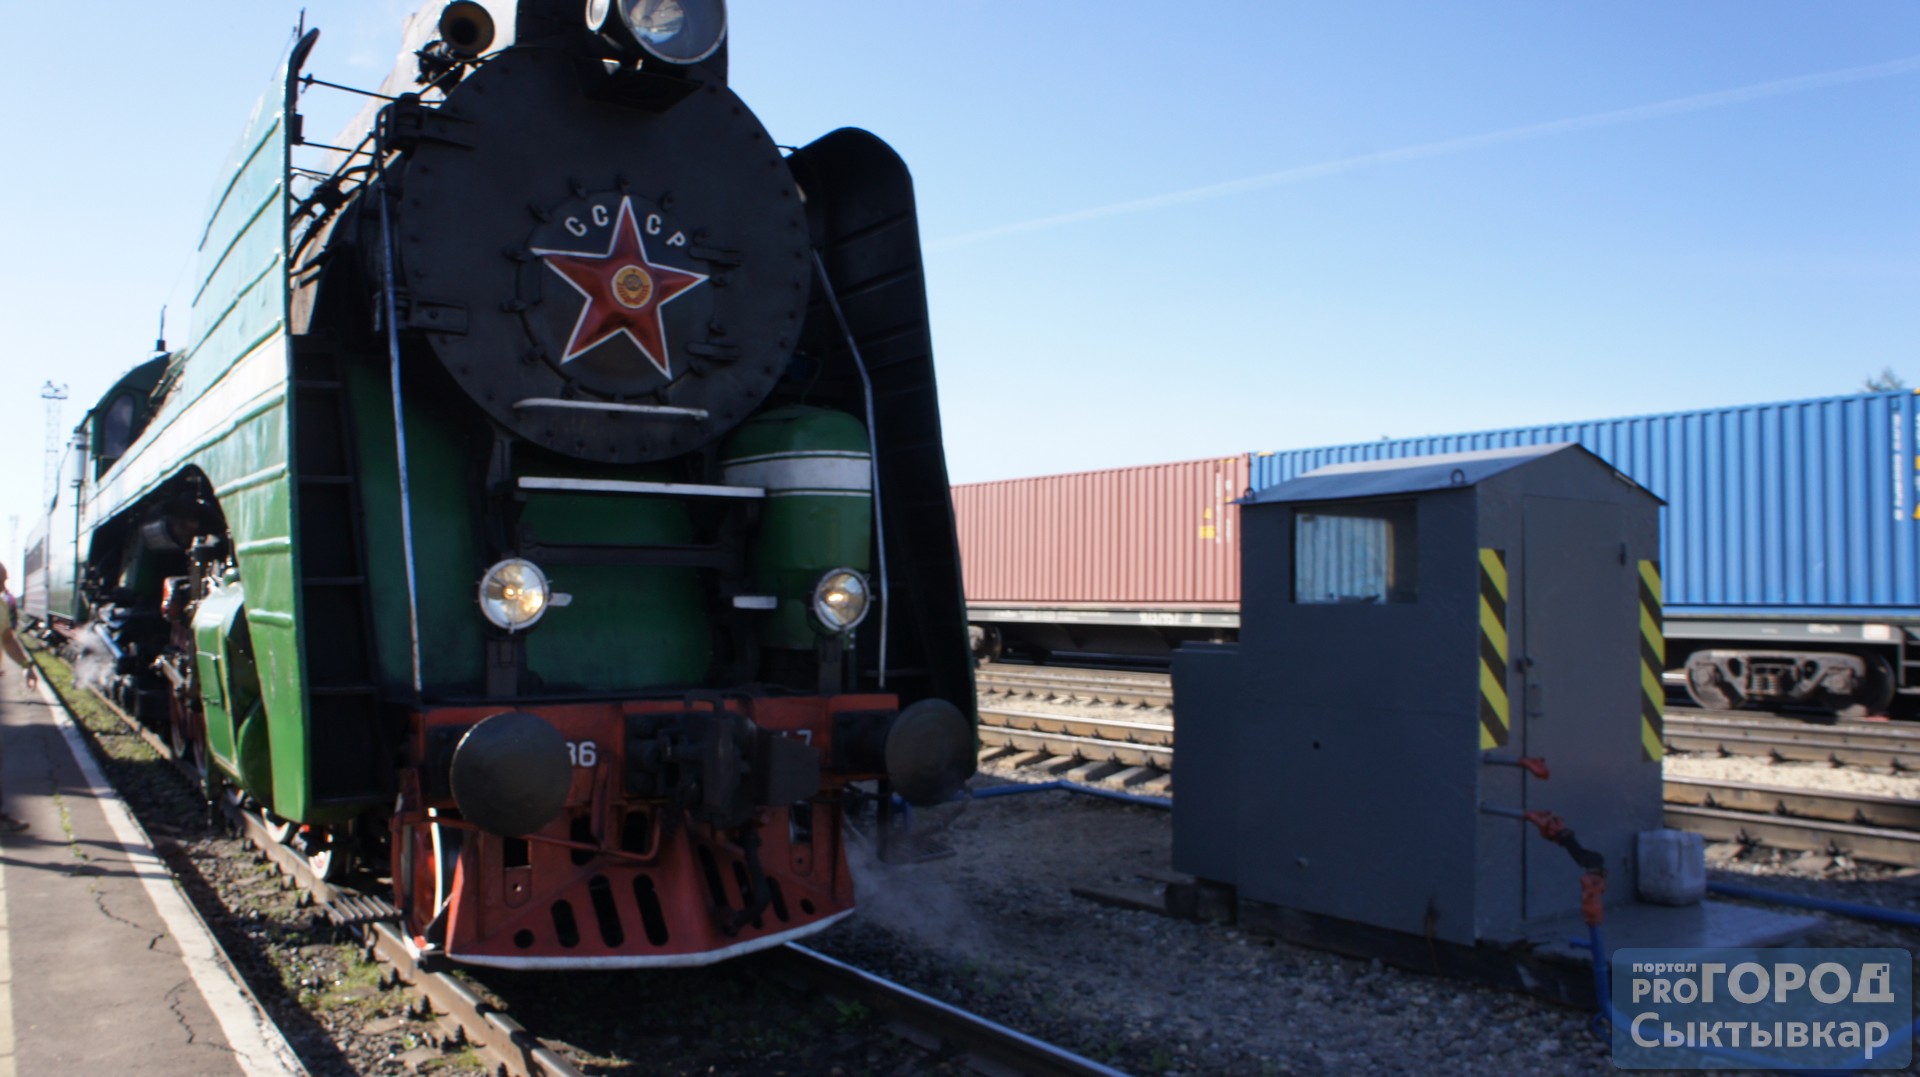 Ретро-поезд будет курсировать в Сыктывкаре до конца августа